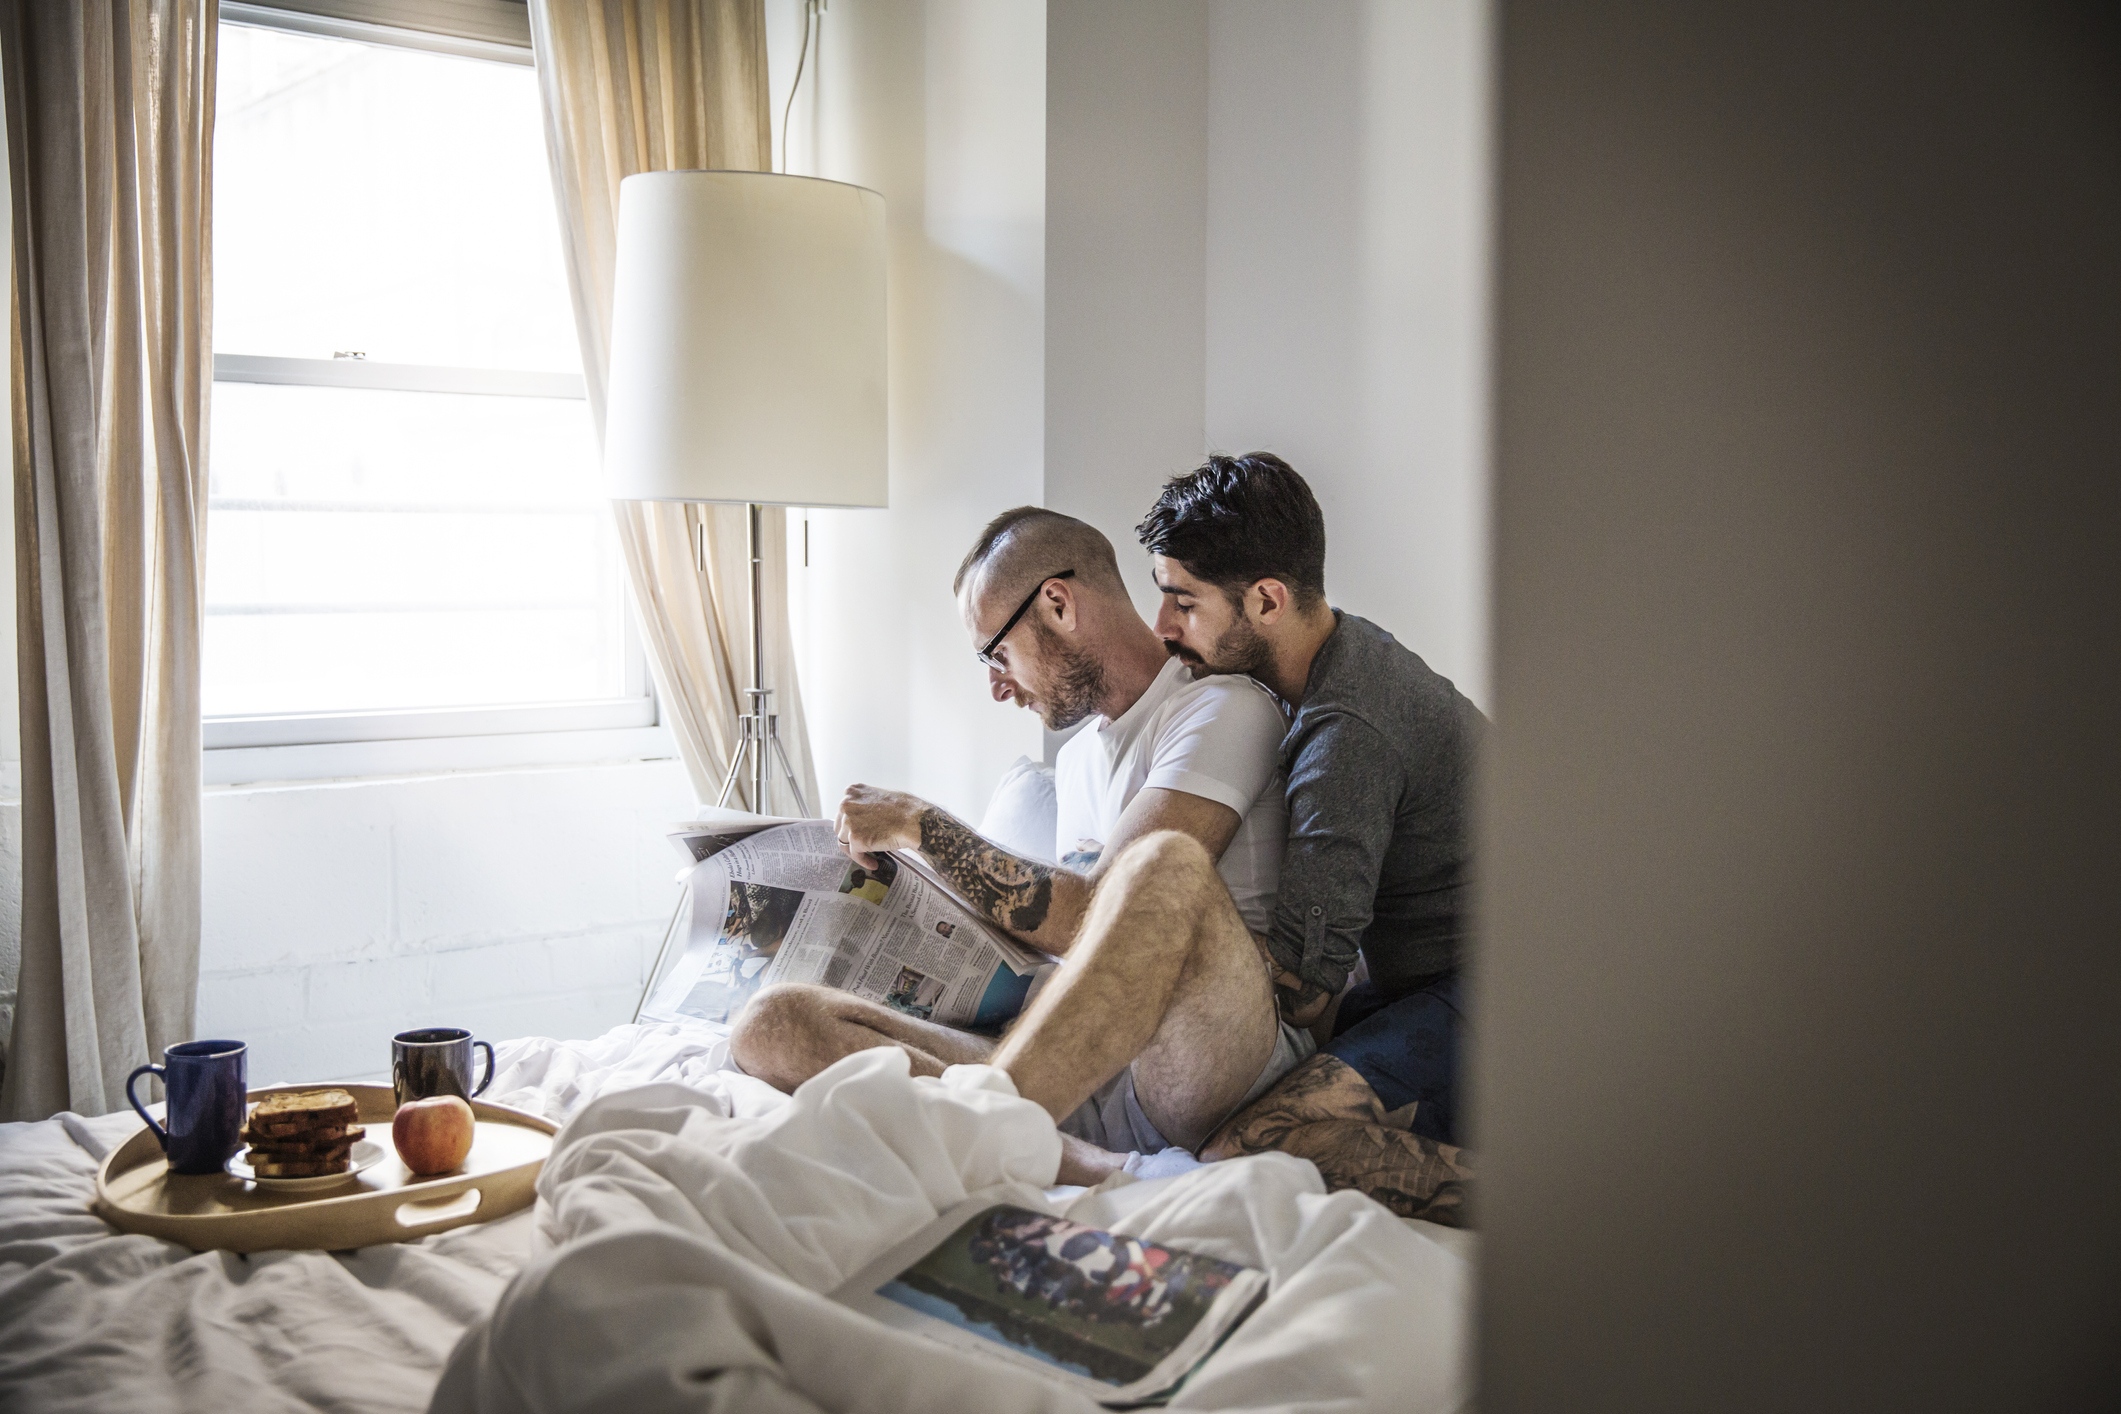 Egy szerelmespár ül az ágyon és a reggeli újságot olvassák, miközben átölelik egymást.